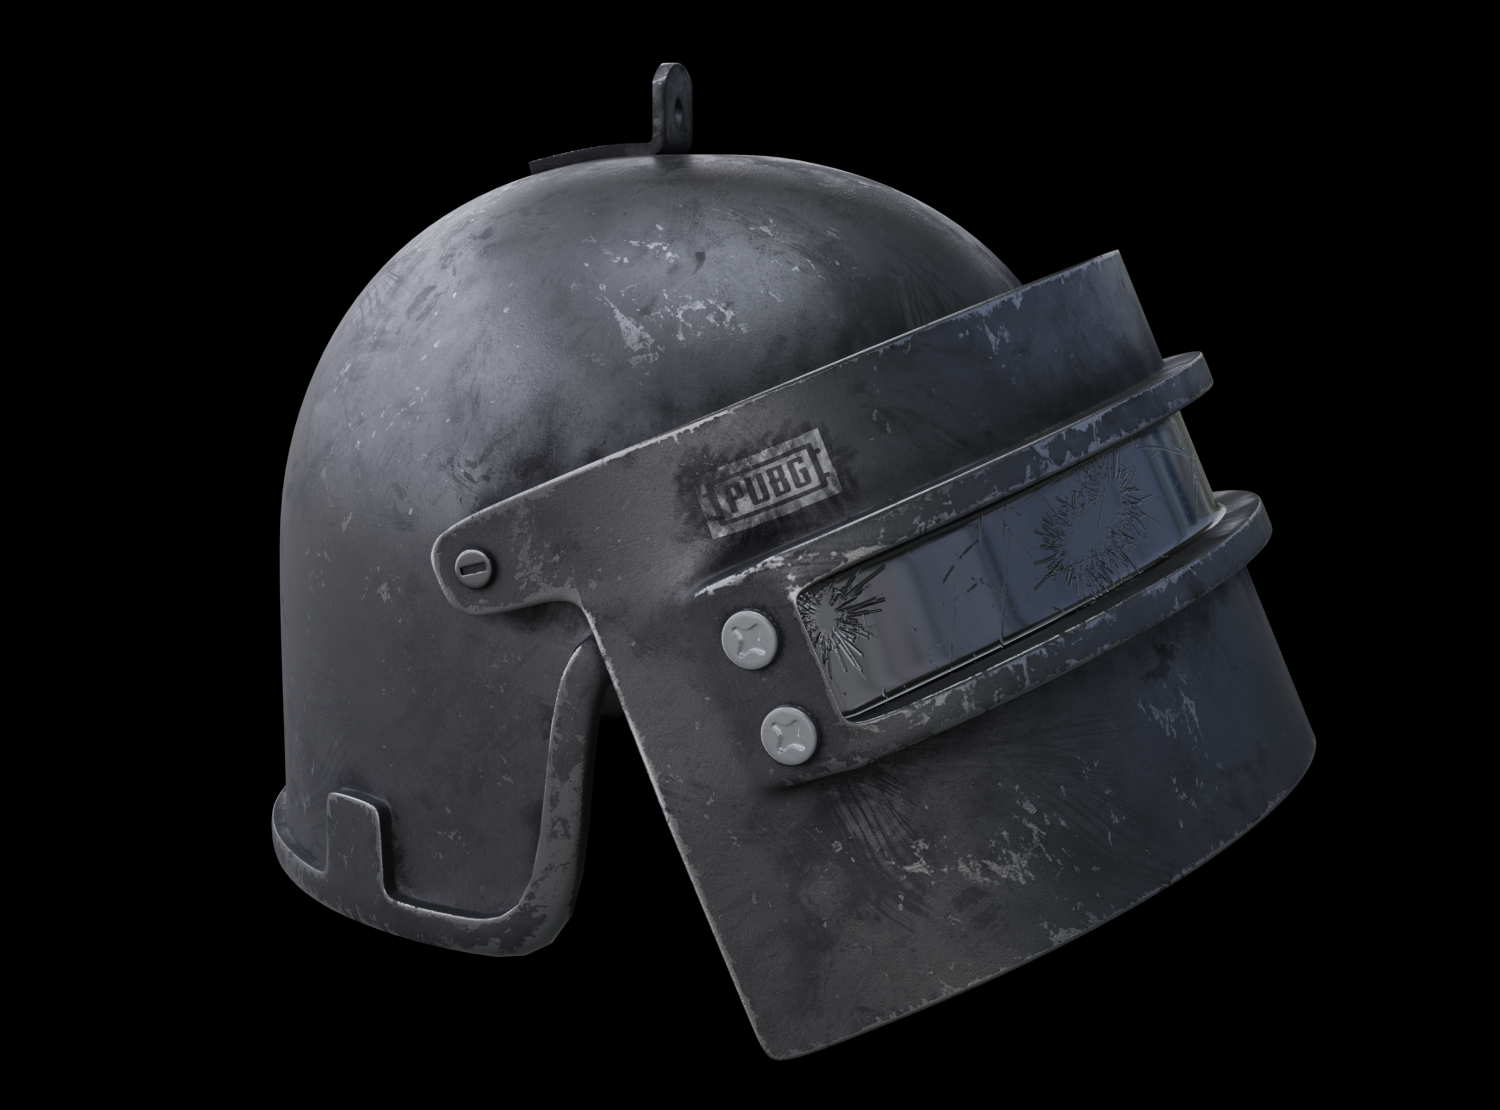 шлем 3 уровня из пубг фото 108